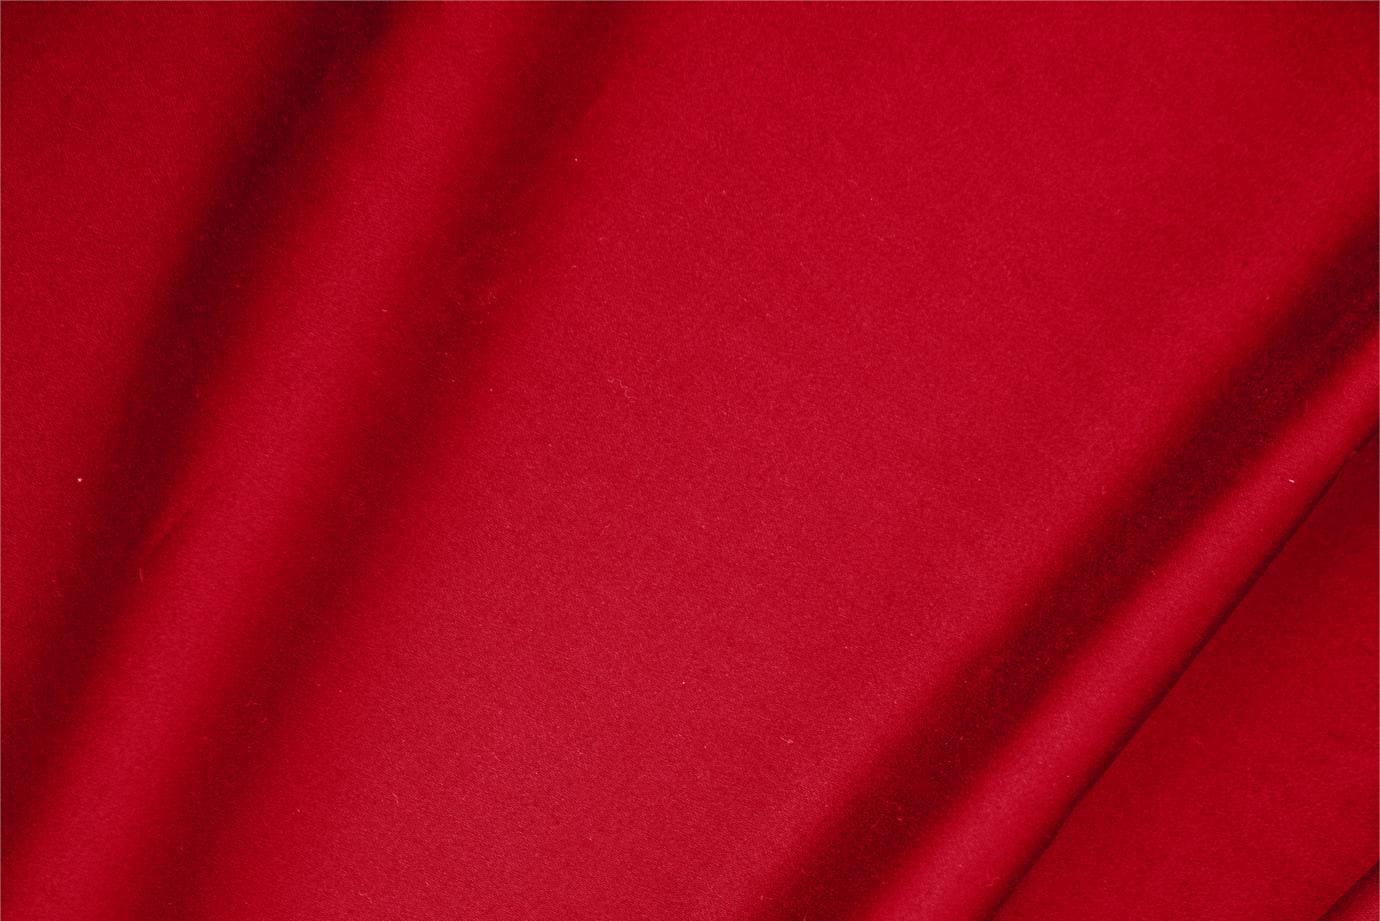 Tessuto Raso di Cotone Stretch Rosso Fuoco in Cotone, Stretch per abbigliamento